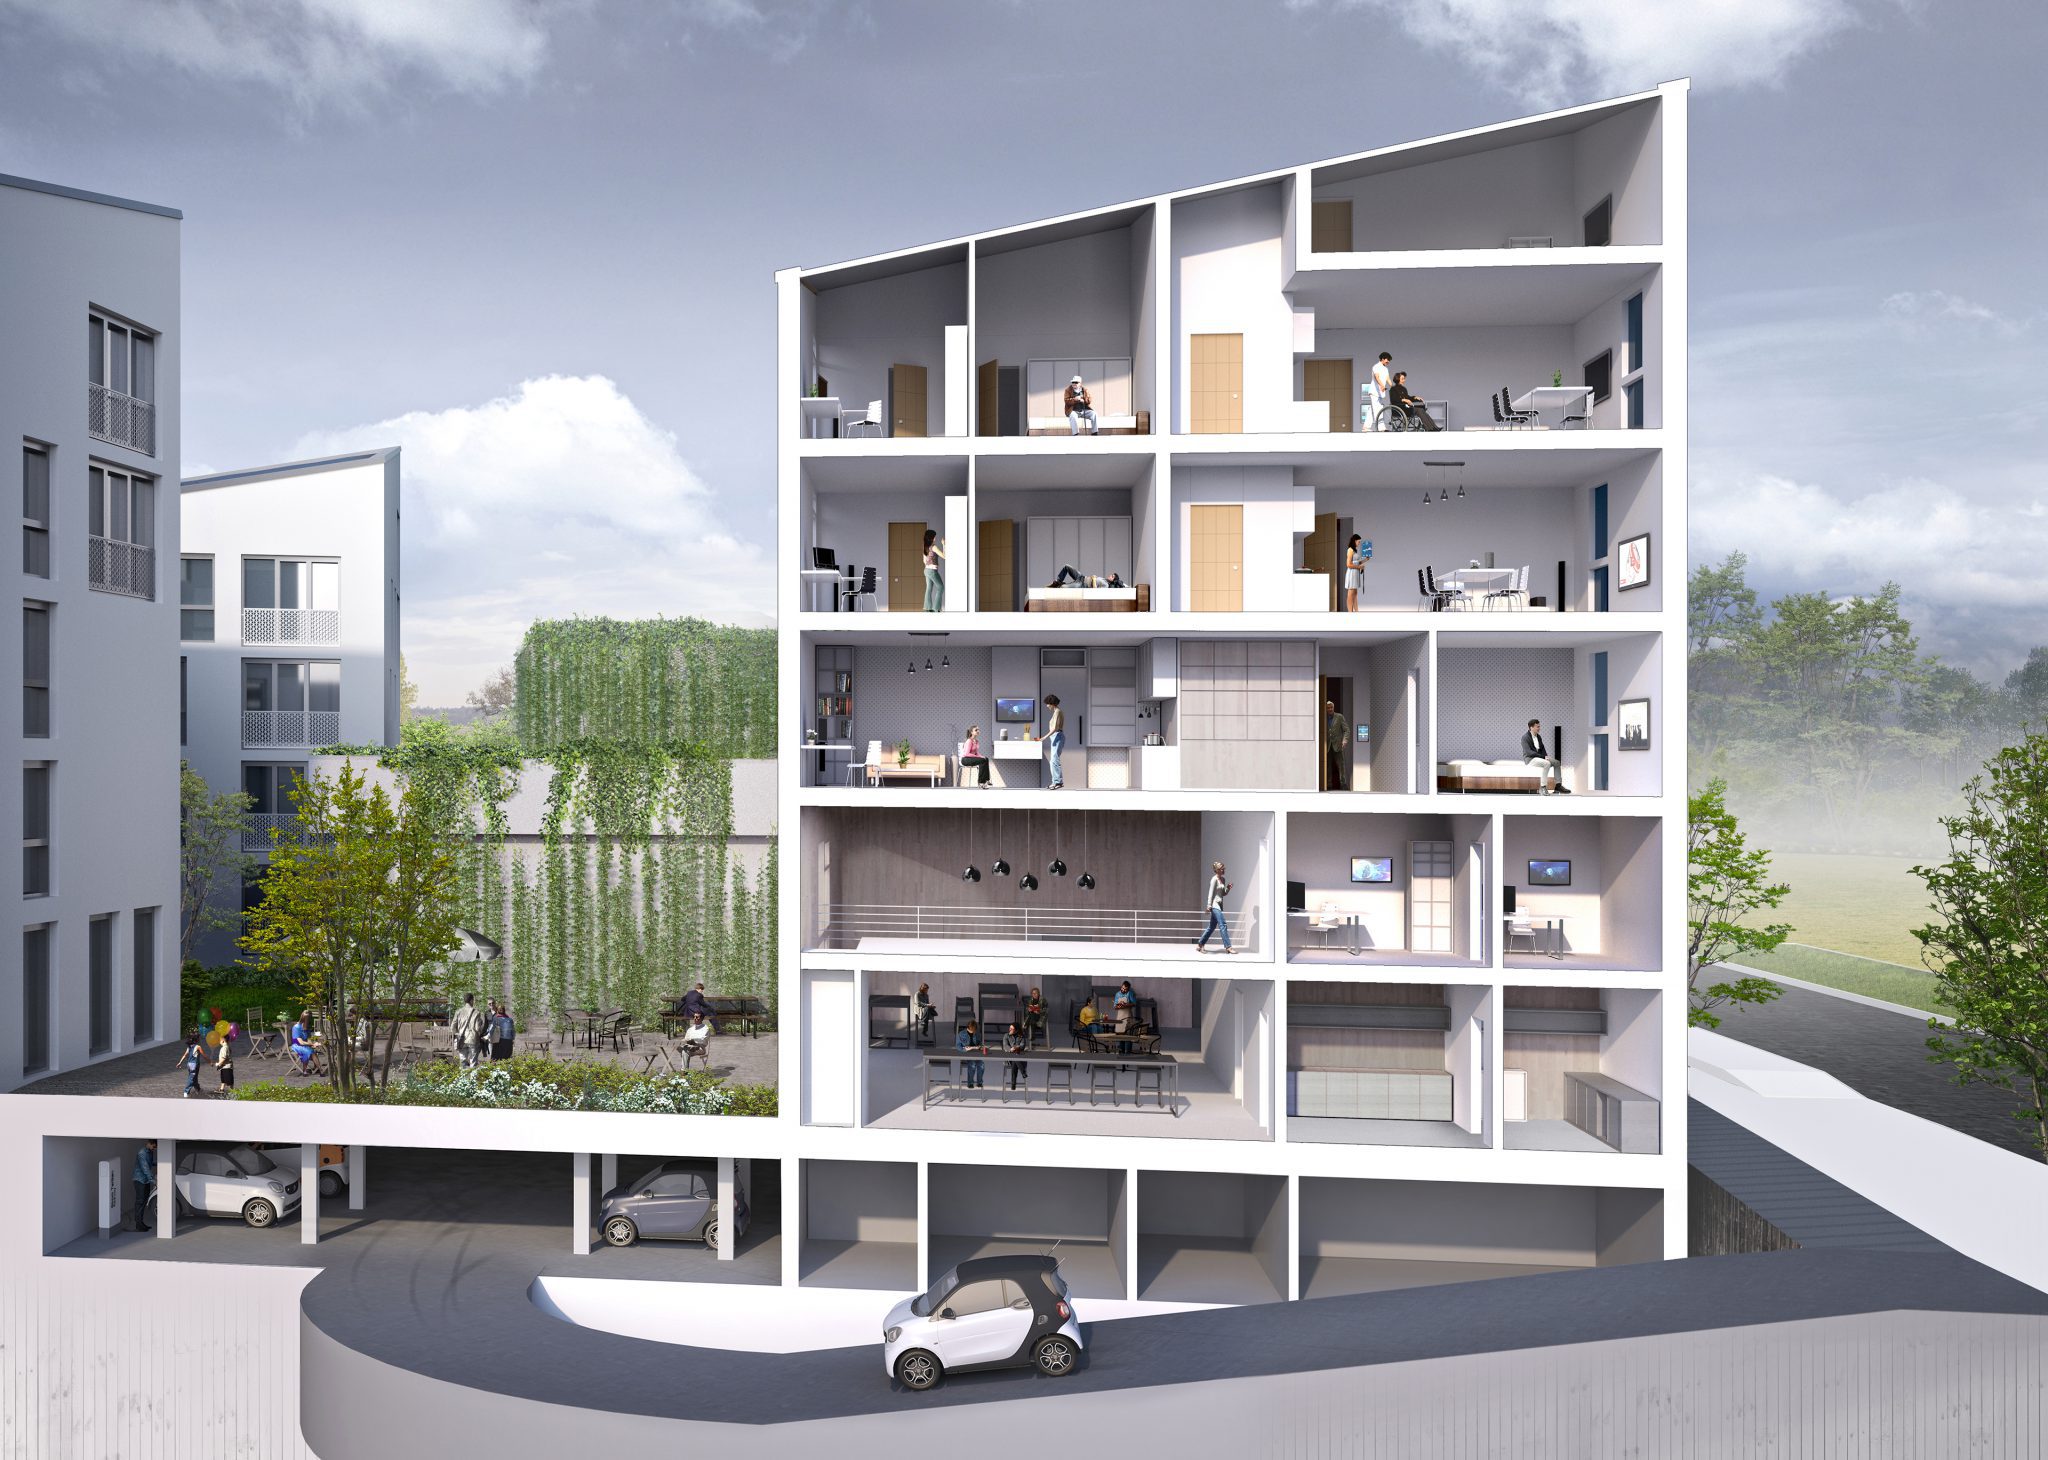 Future Living Berlin abre sus puertas, la primera Smart City de Europa desarrollada por Panasonic